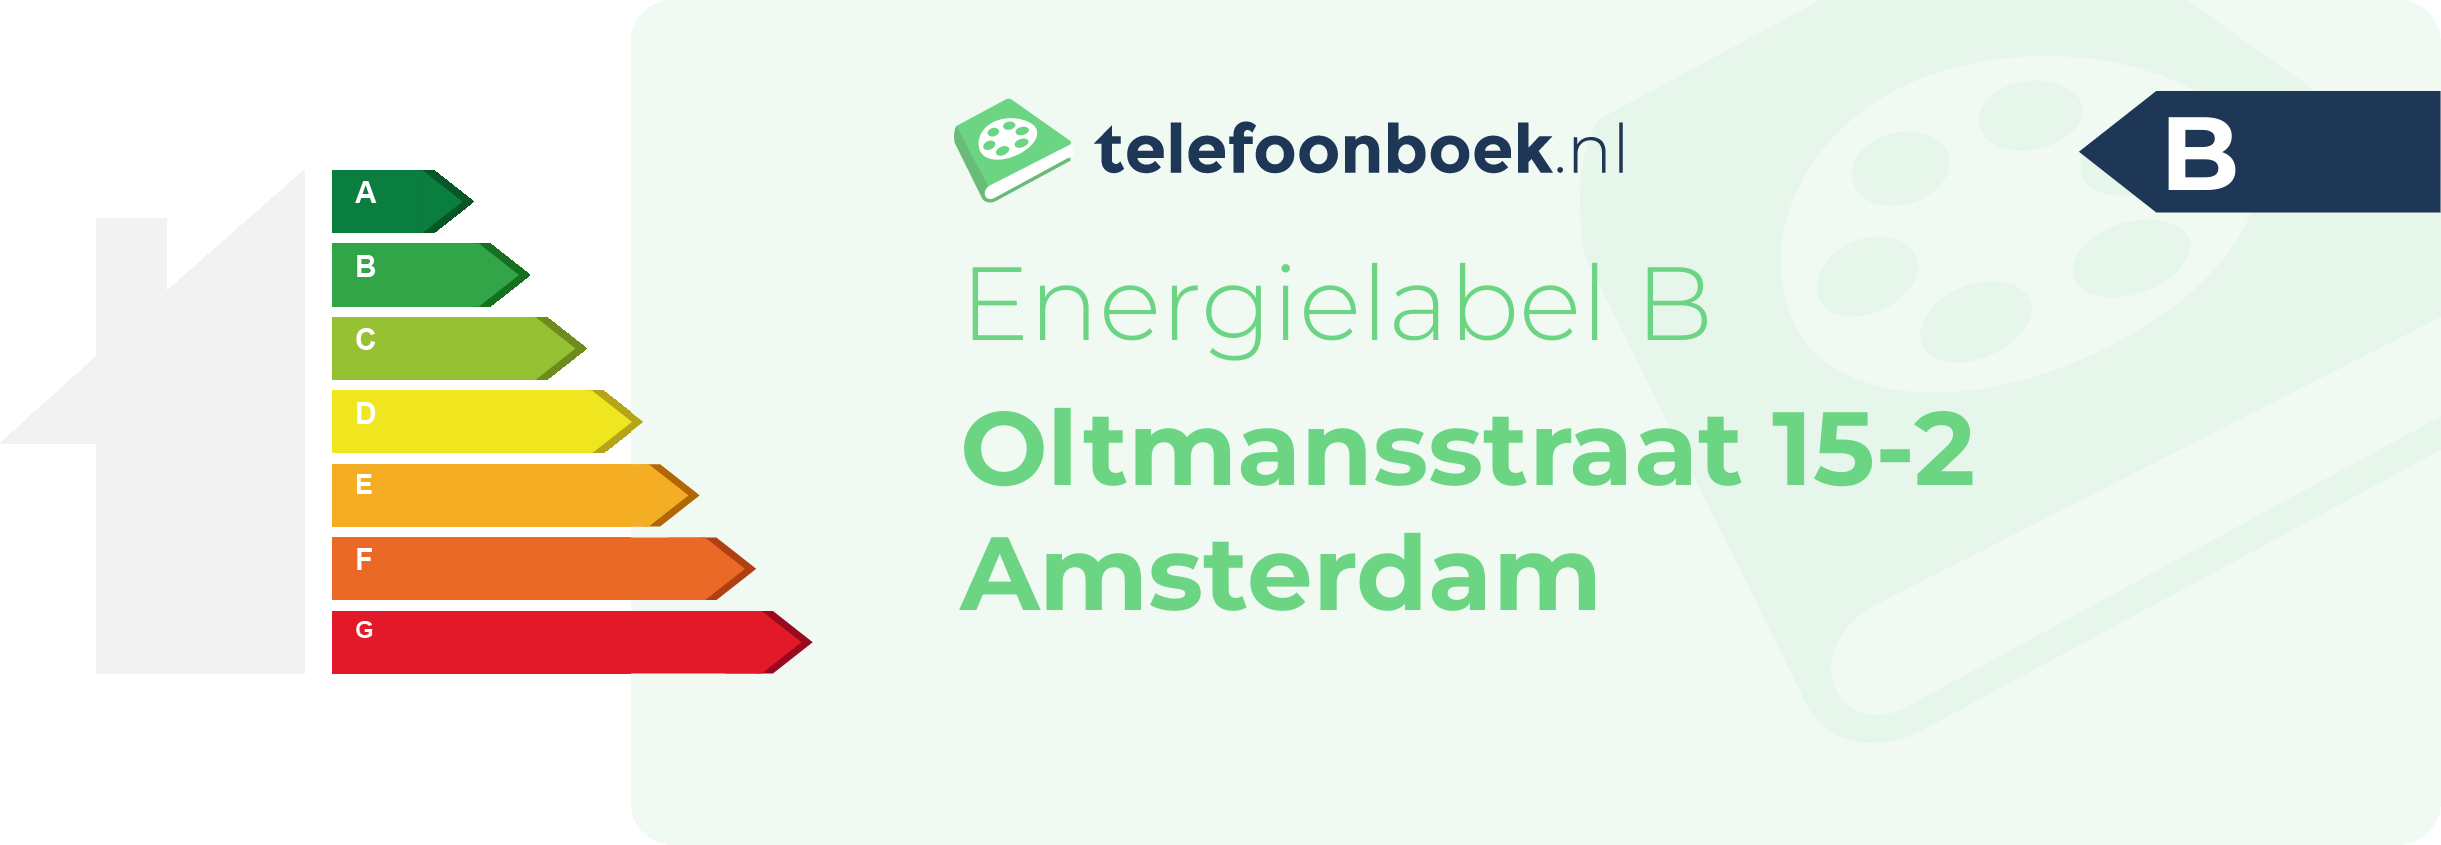 Energielabel Oltmansstraat 15-2 Amsterdam